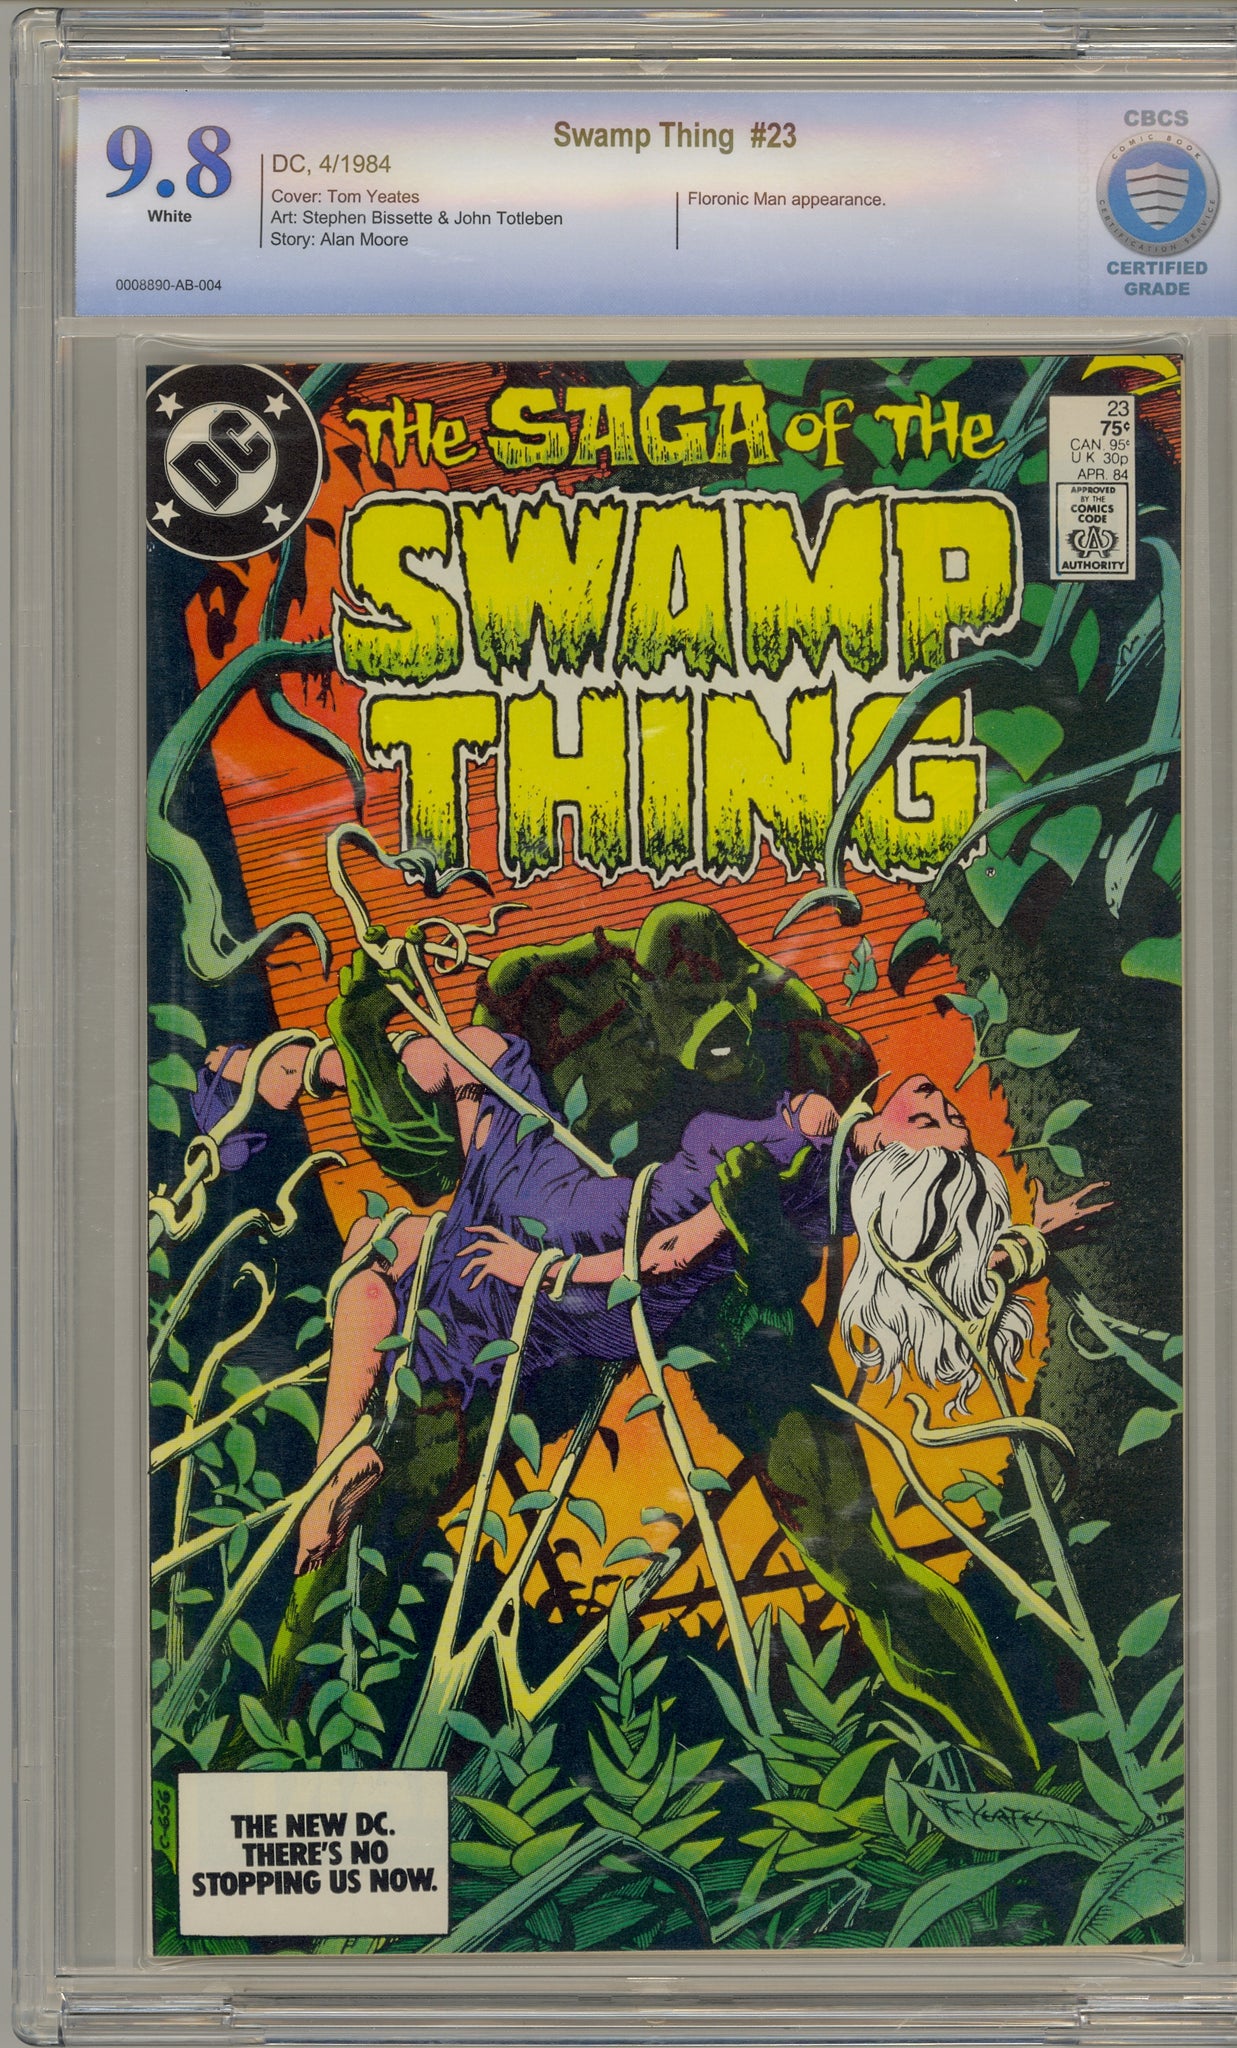 Saga of the Swamp Thing #23 (1984)